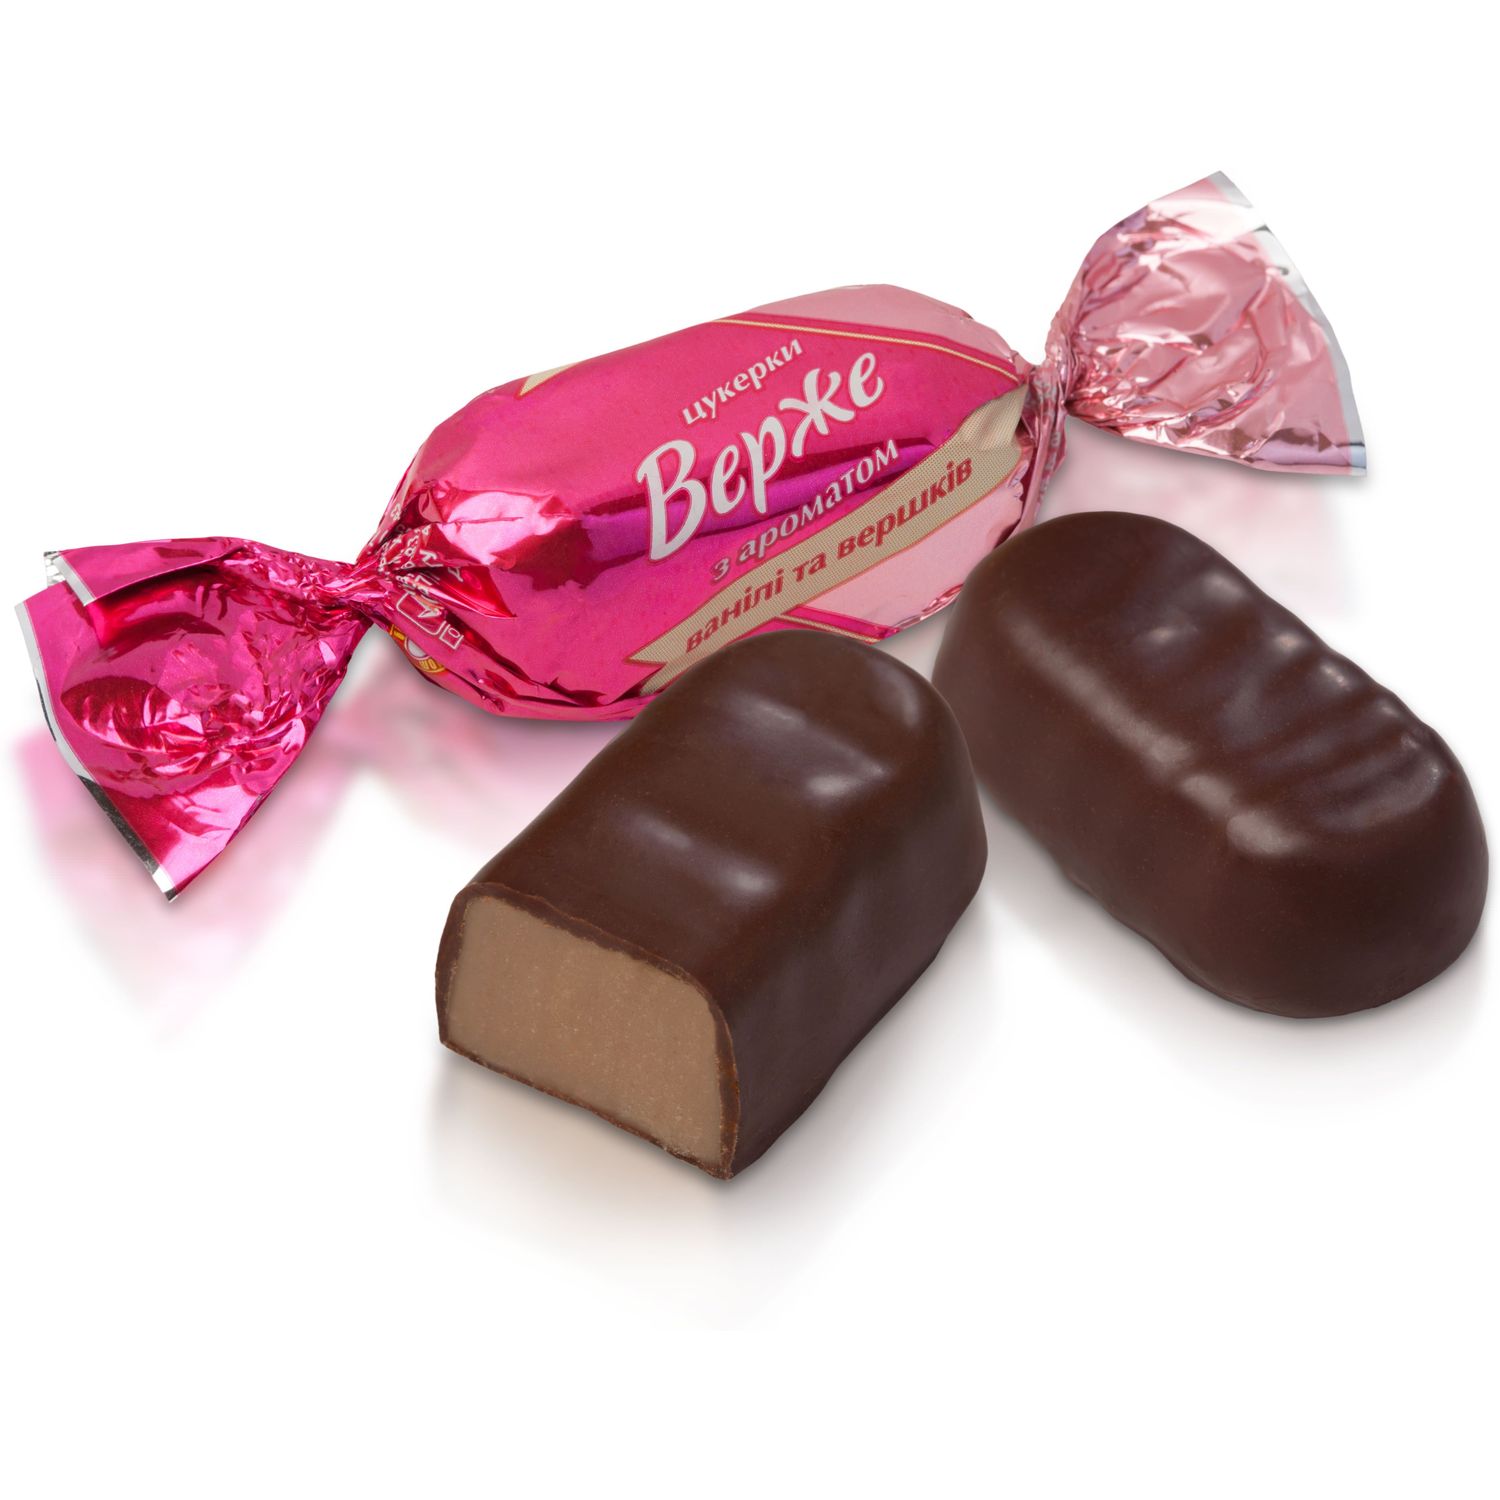 Цукерки Бісквіт-Шоколад Верже з ароматом ванілі та вершків, 200 г - фото 2